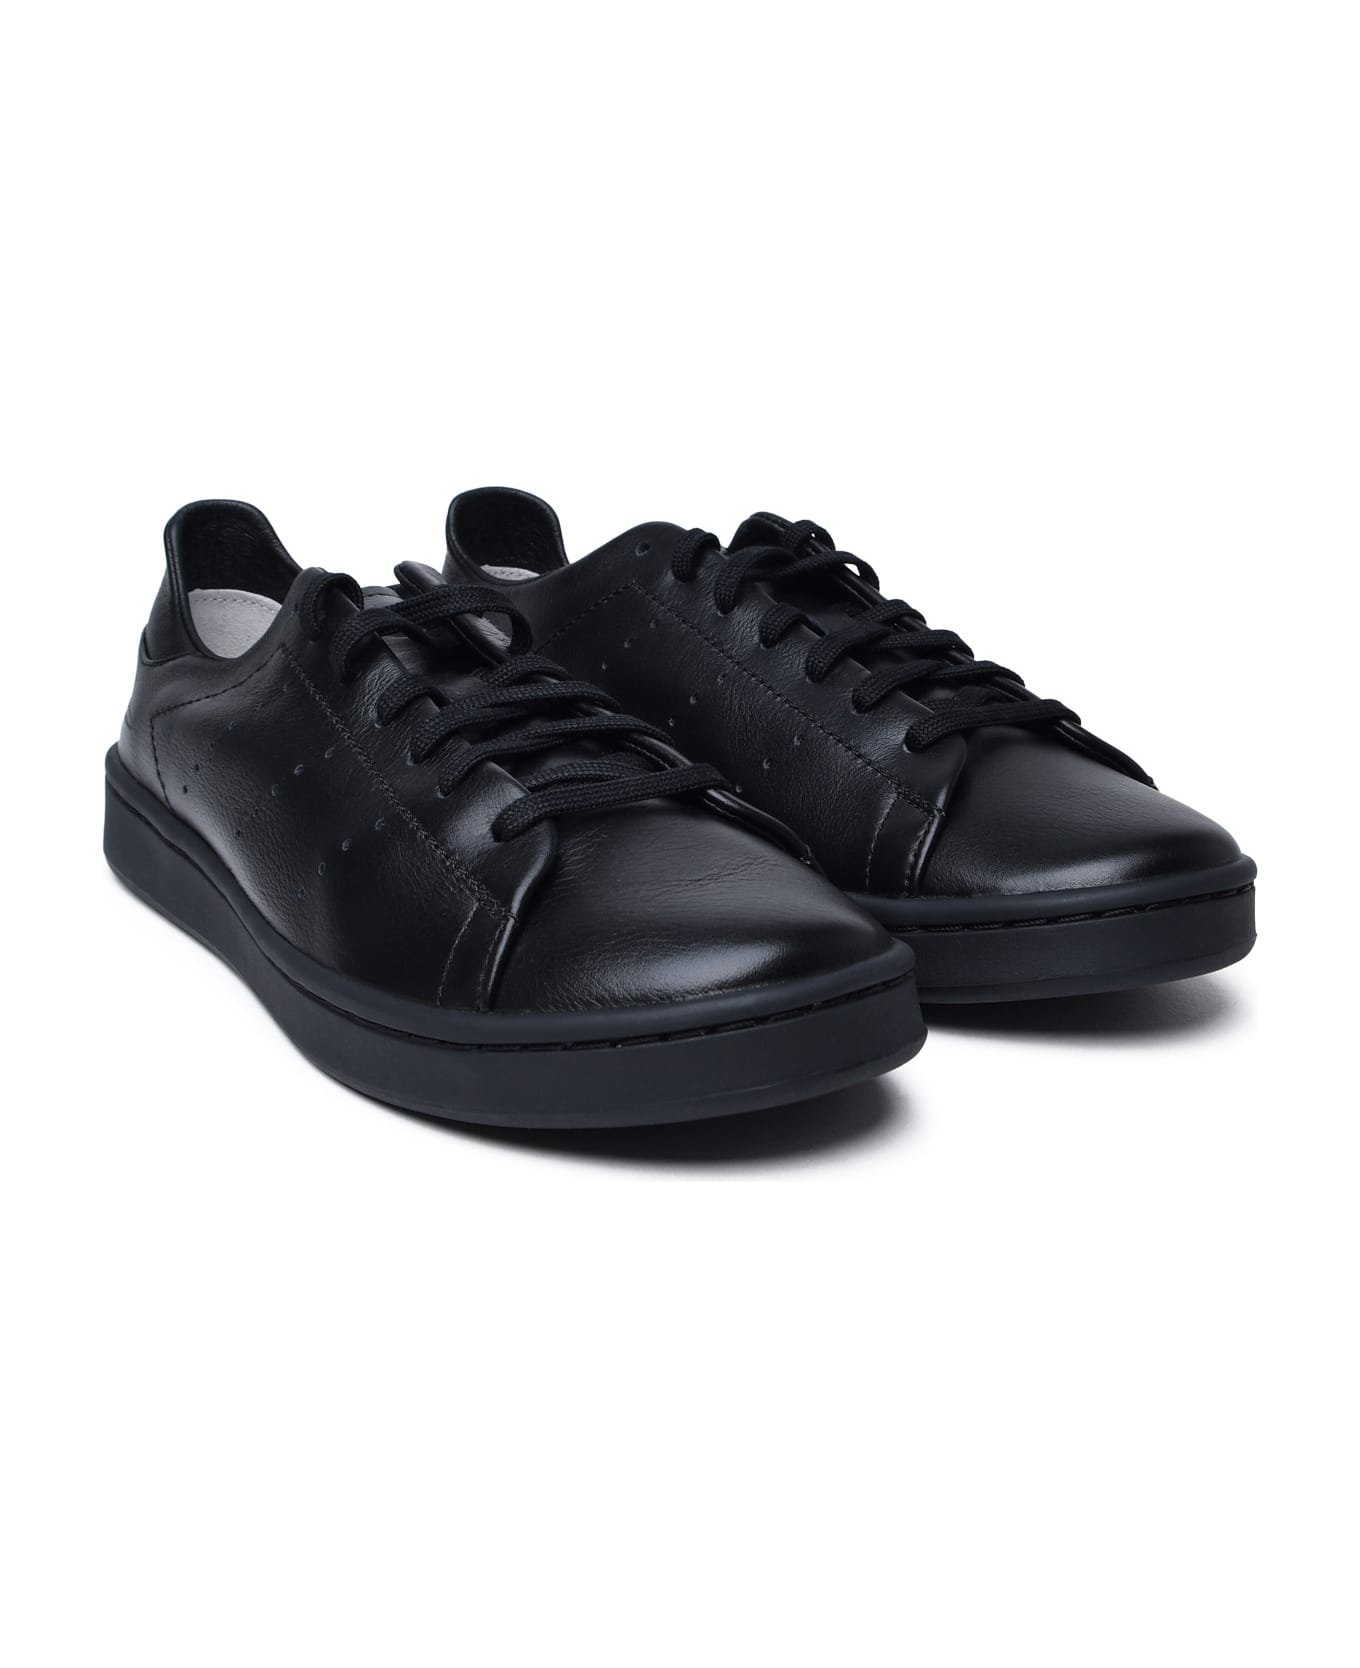 Y-3 Black Leather Sneakers - BLACKBLACKBLACK